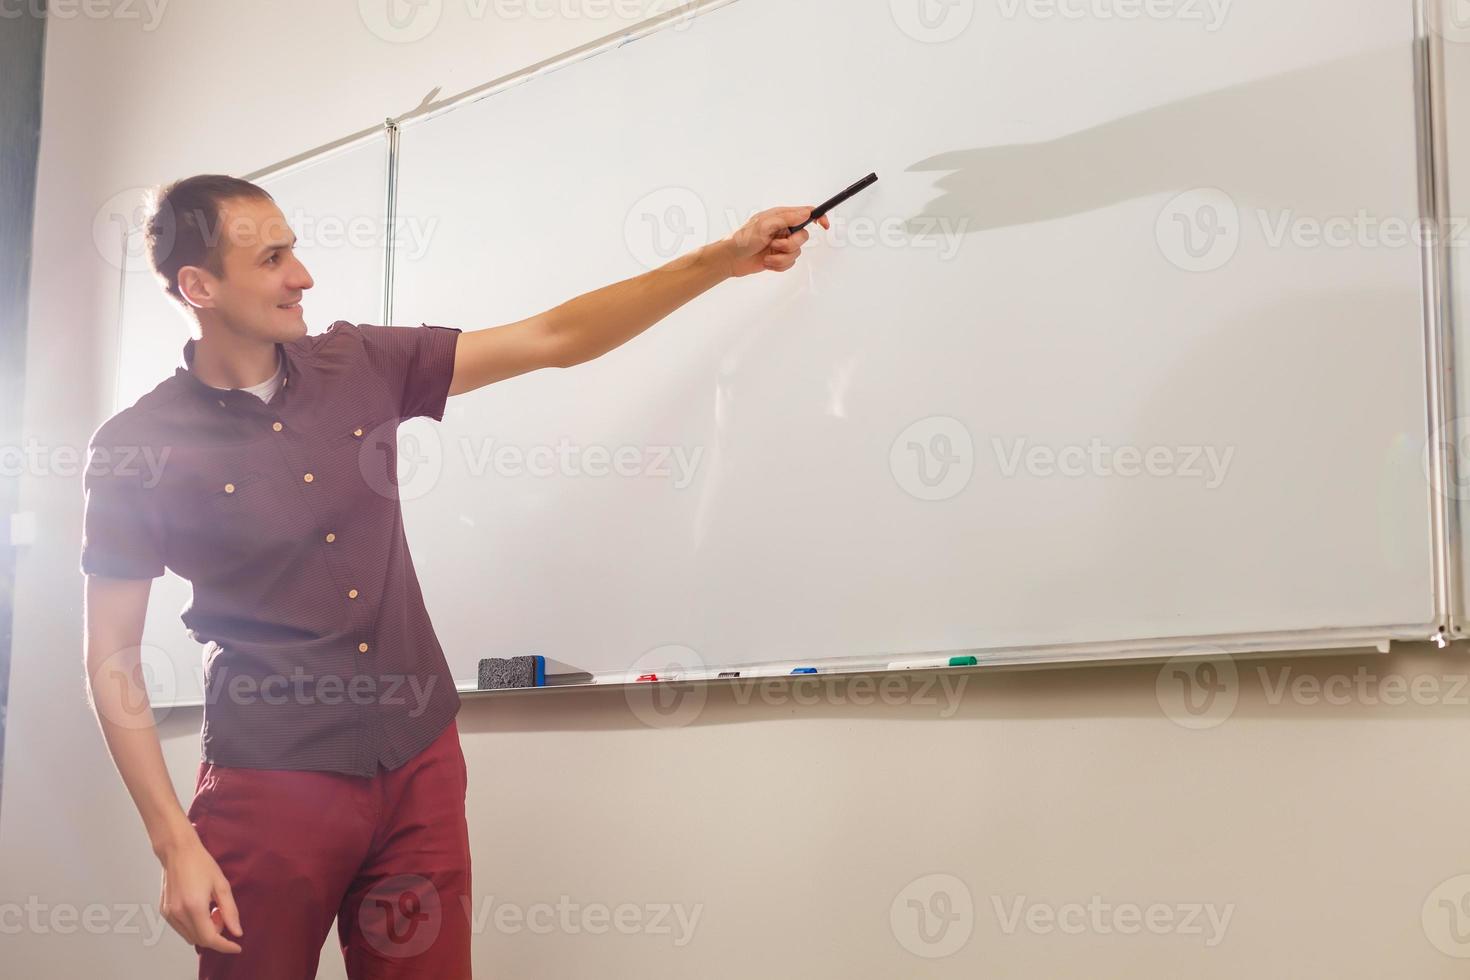 profesor masculino escuchando a los estudiantes en la clase de educación de adultos foto